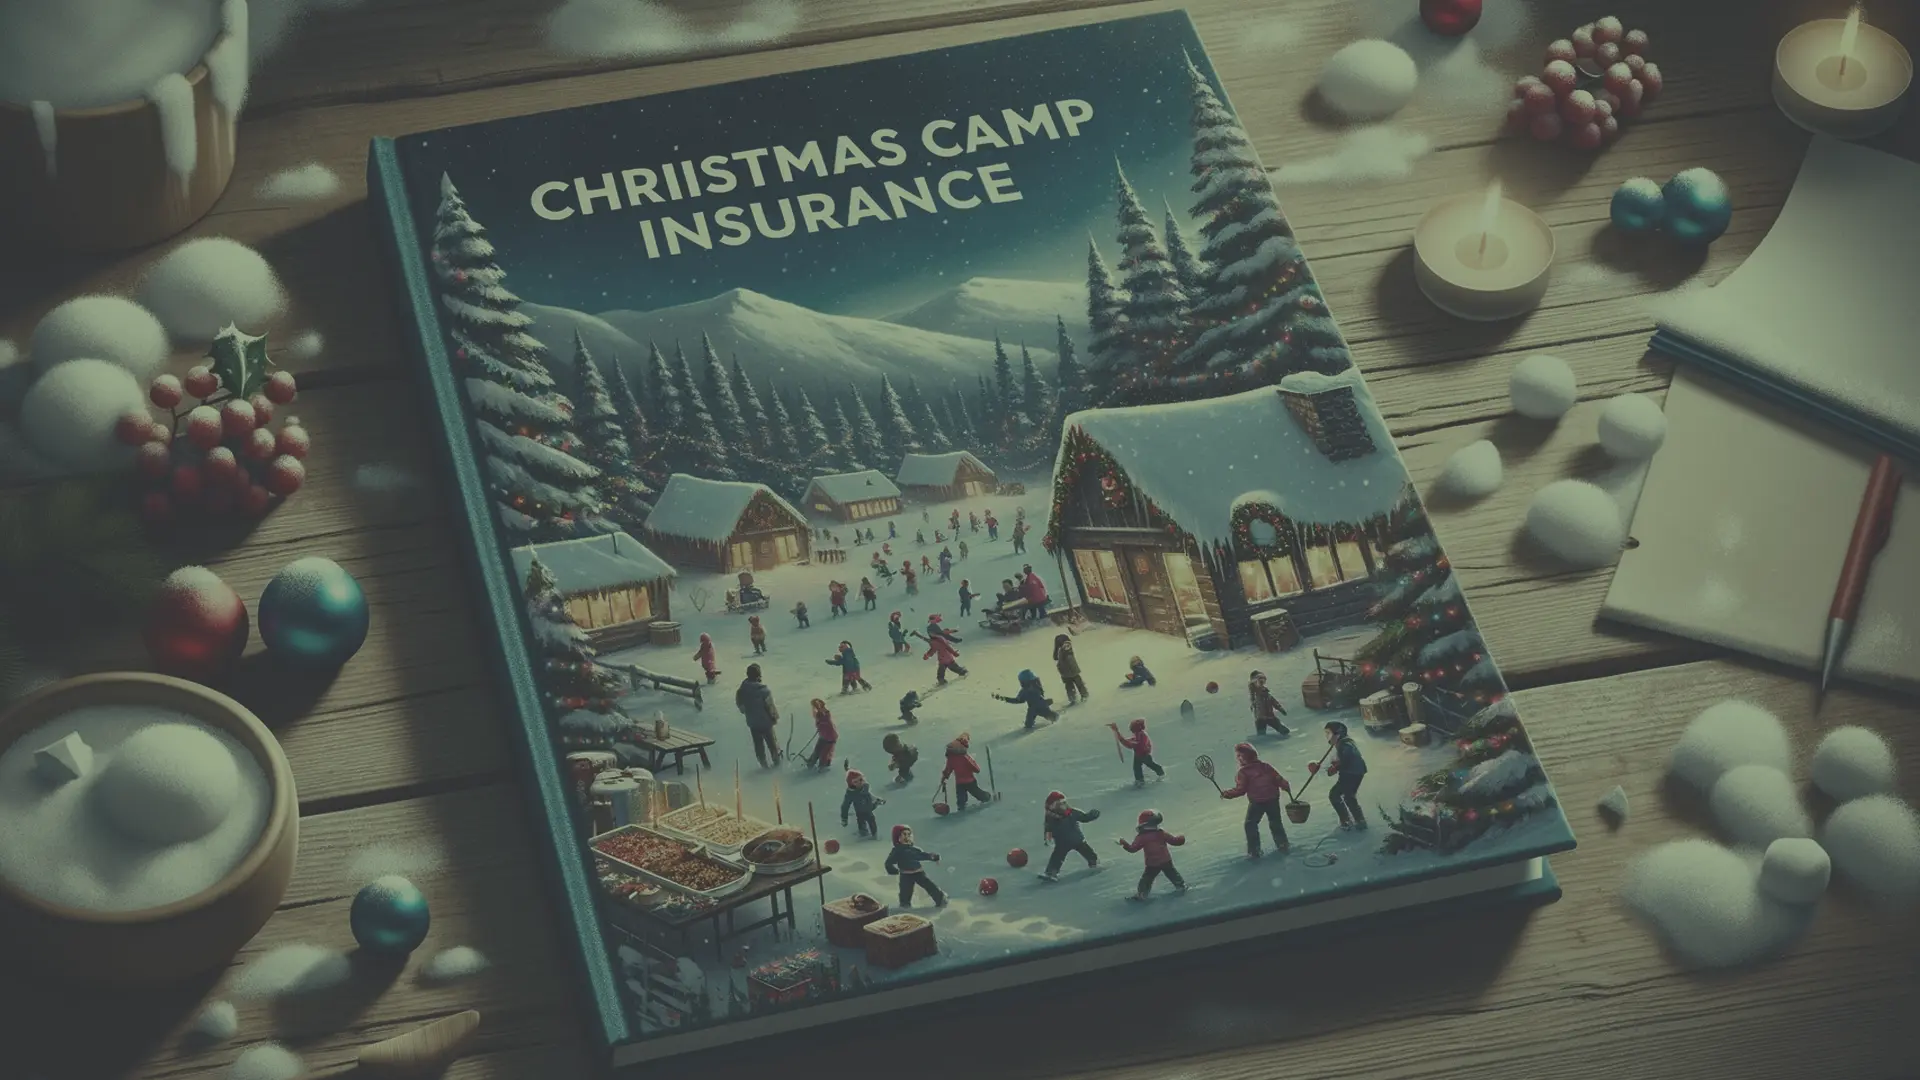 un cuaderno donde pone "seguro para campamentos de navidad"